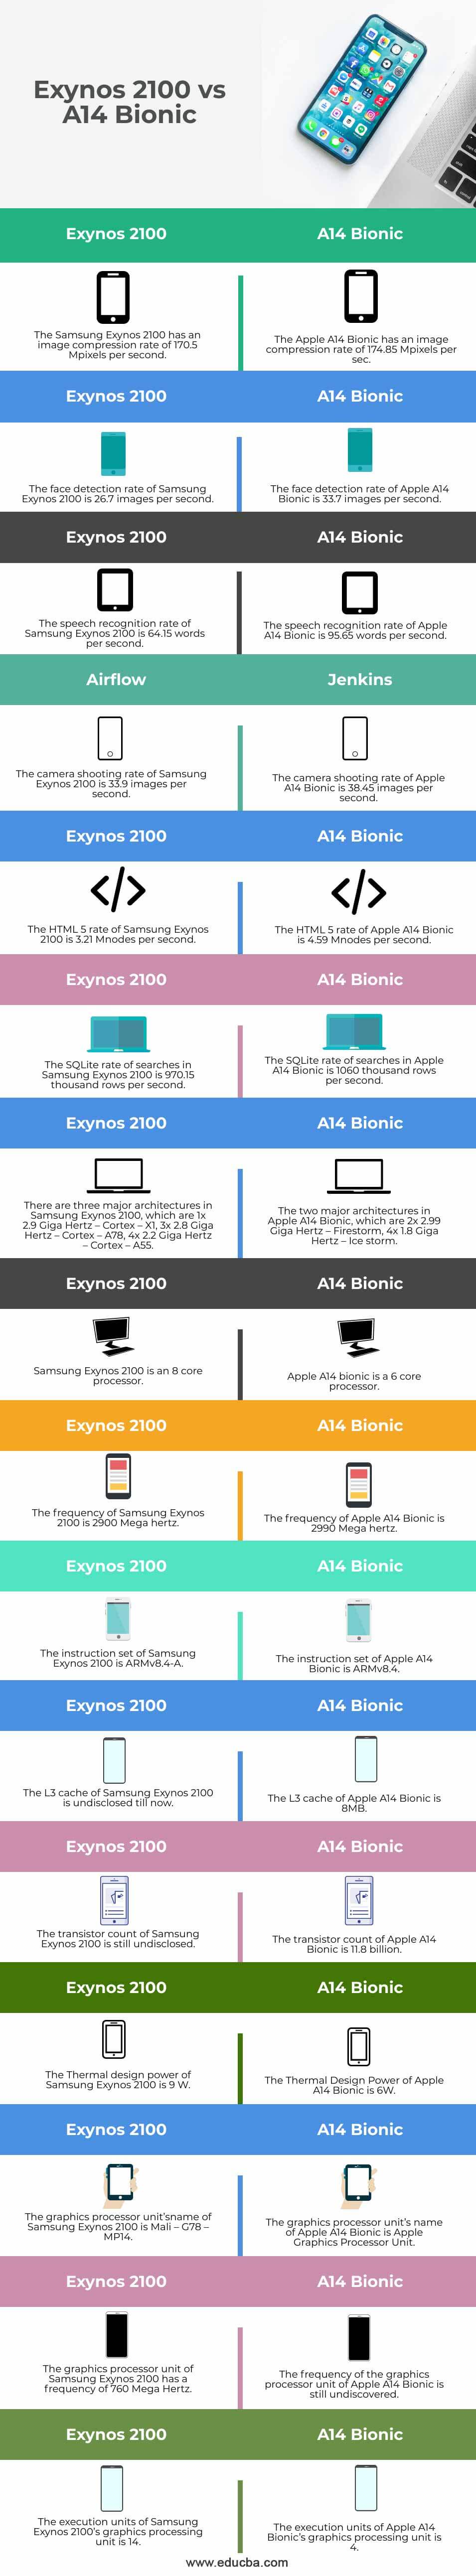 Exynos-2100-vs-A14-Bionic-info